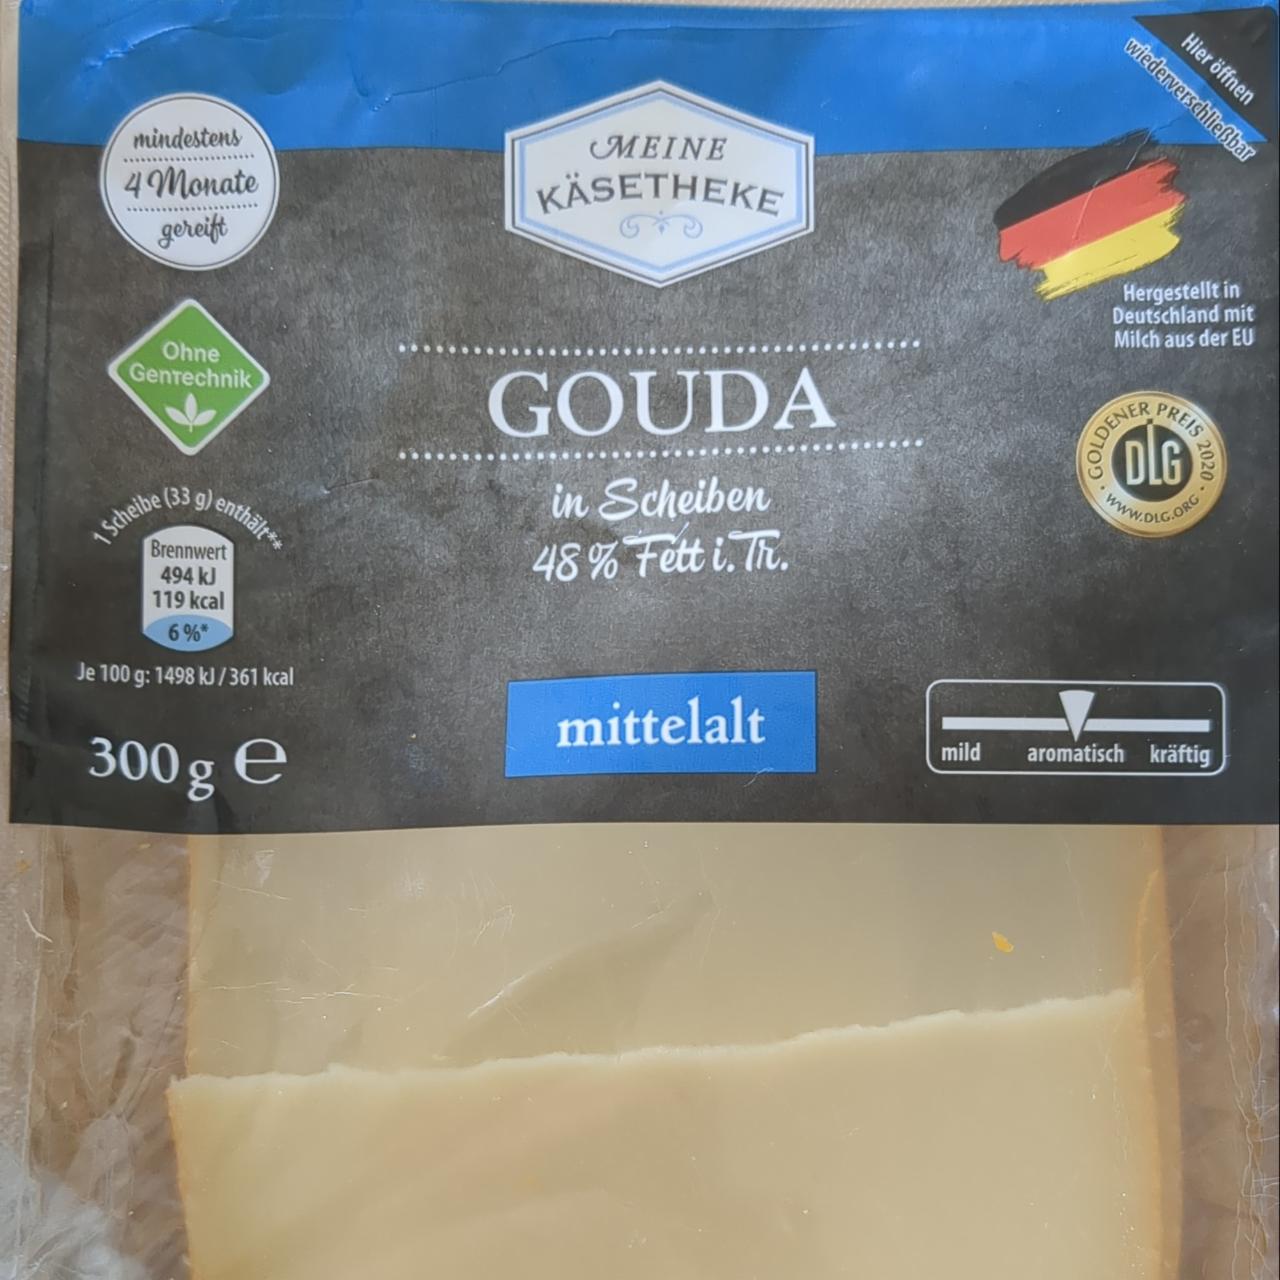 Fotografie - Gouda mittelalt in Scheiben 48% Fett Meine Käsetheke